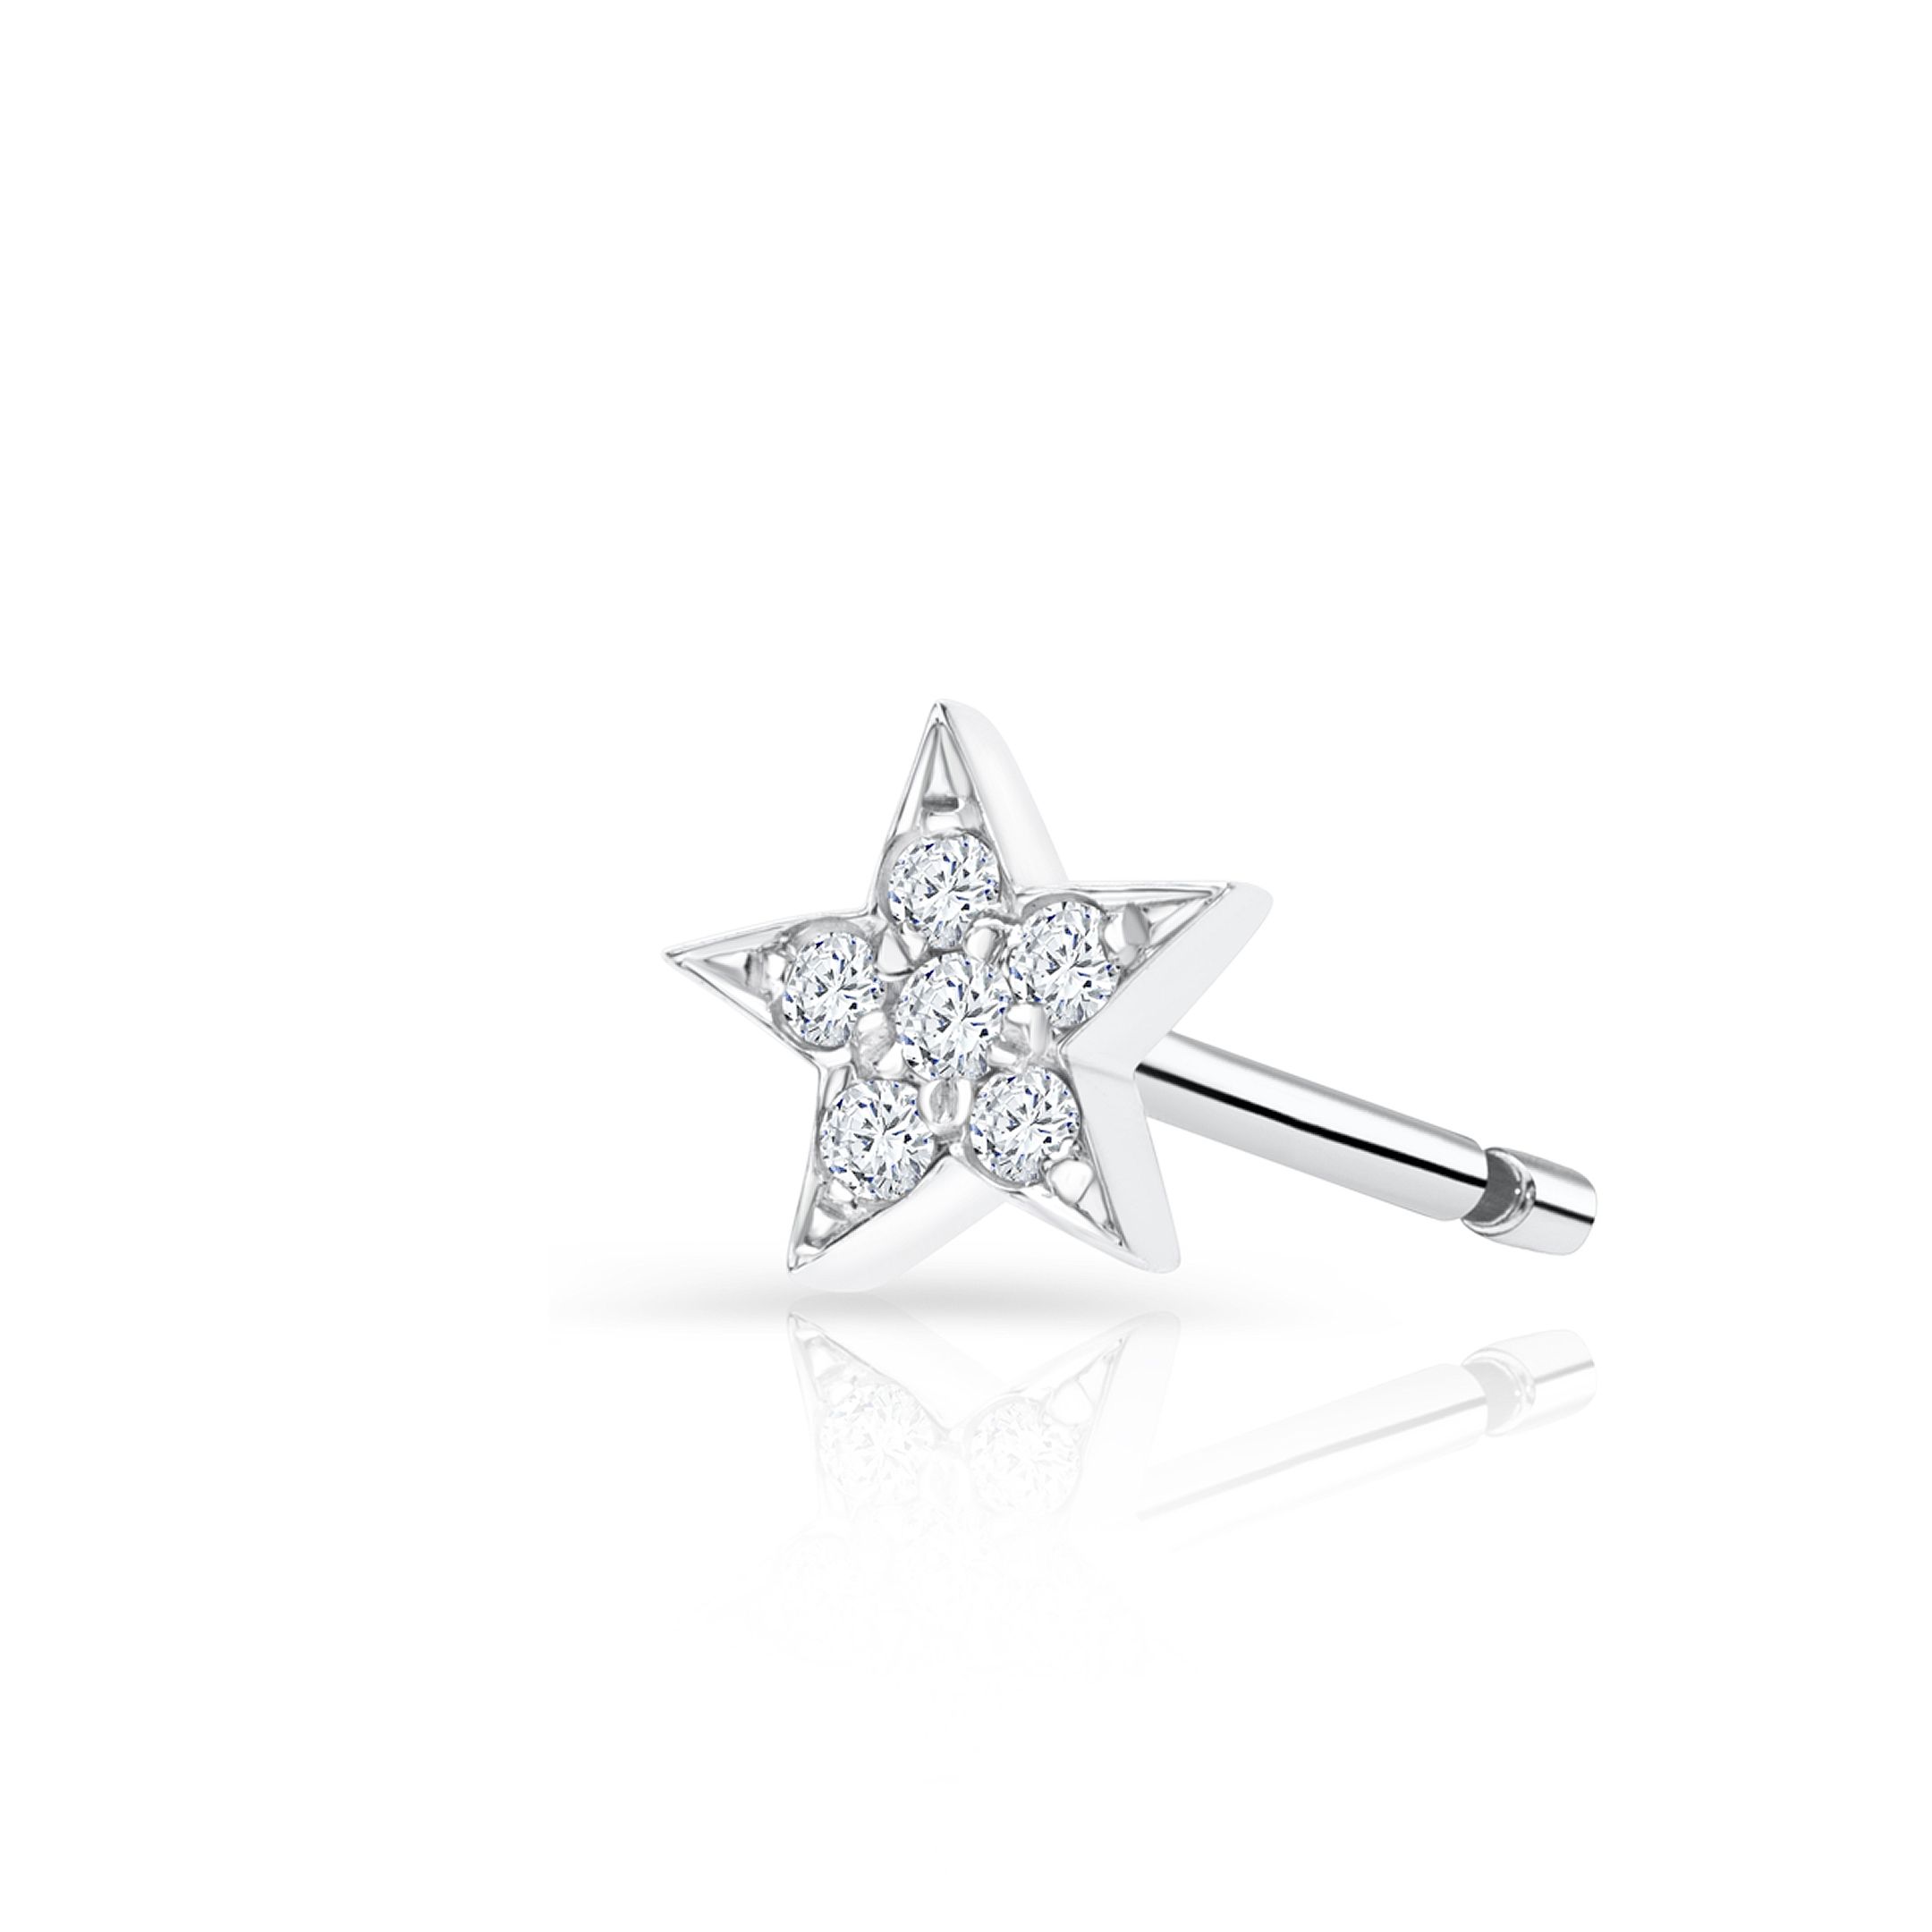 Pendiente Piercing Estrella Moon Diamonds en Oro Blanco de 18 Kt